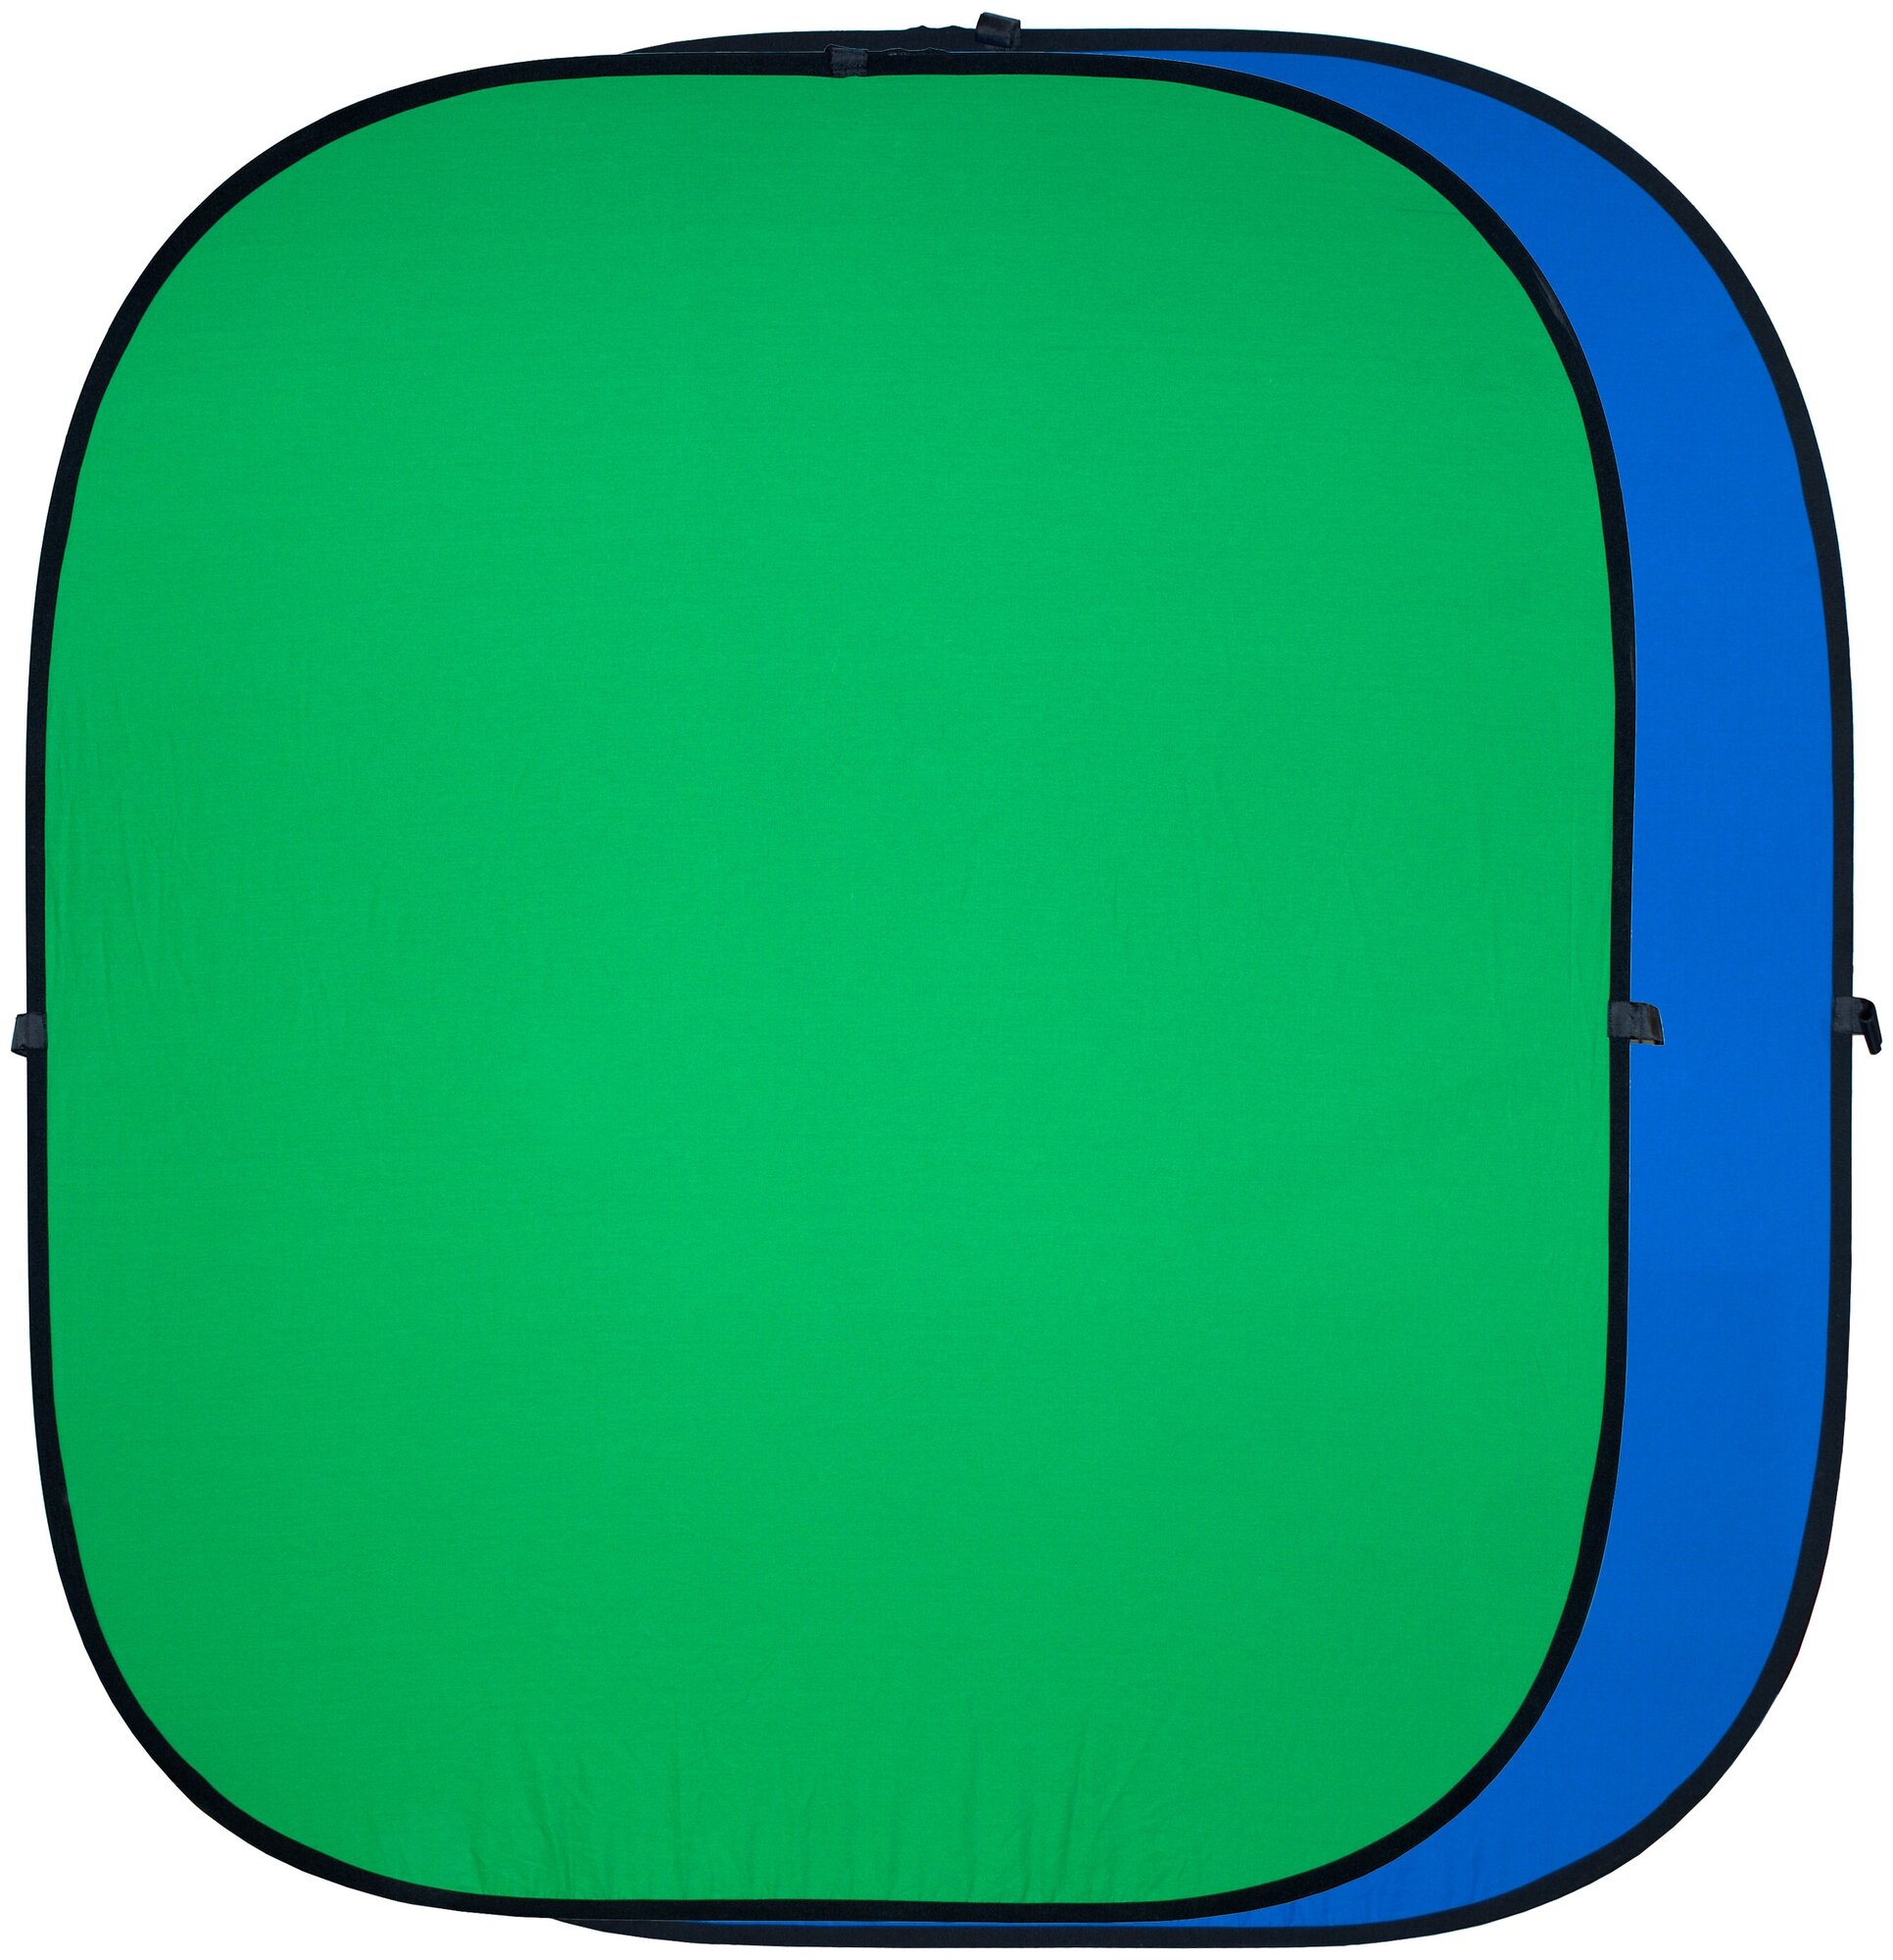 Фон складной GreenBean Twist B/G, 1.8x2.1м зеленый/синий